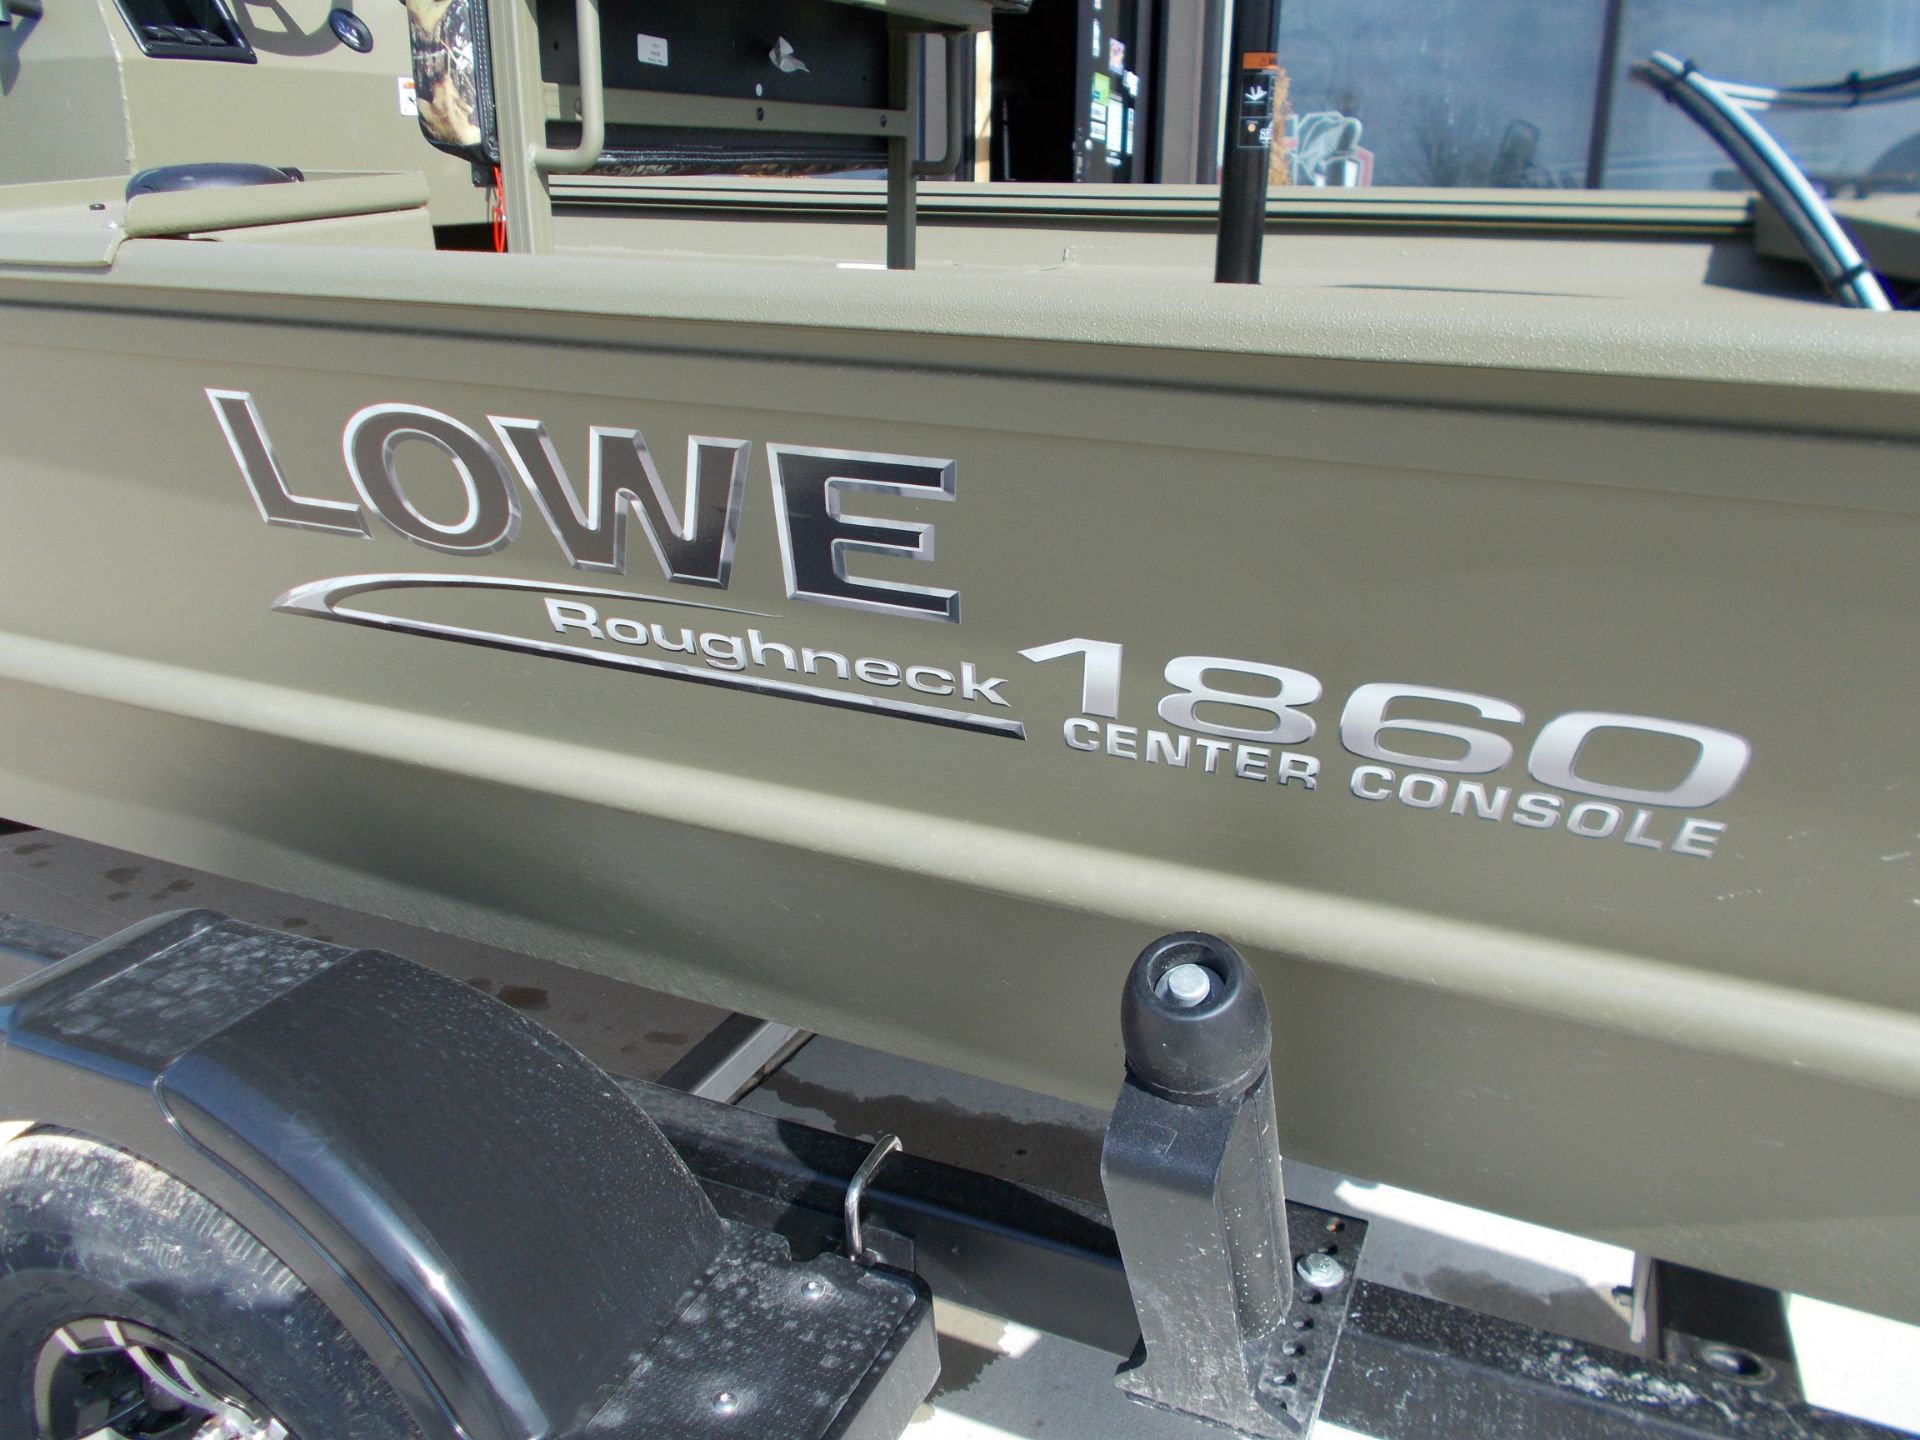 2022 Lowe RX18CC in West Plains, Missouri - Photo 2